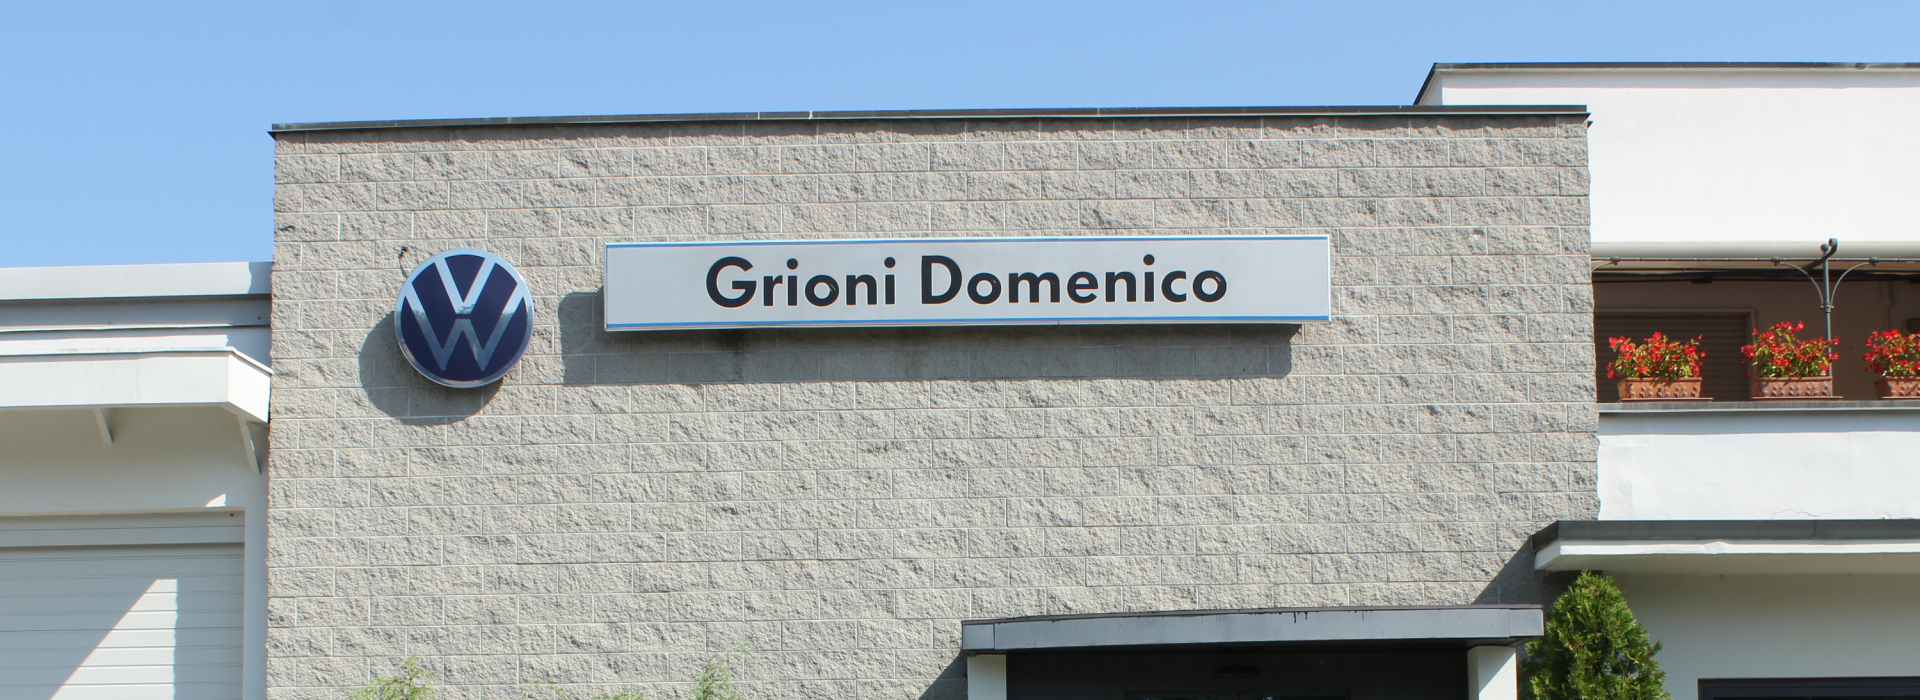 Grioni Domenico - nuovo e usato Volkswagen a Rivolta d'Adda - Cremona